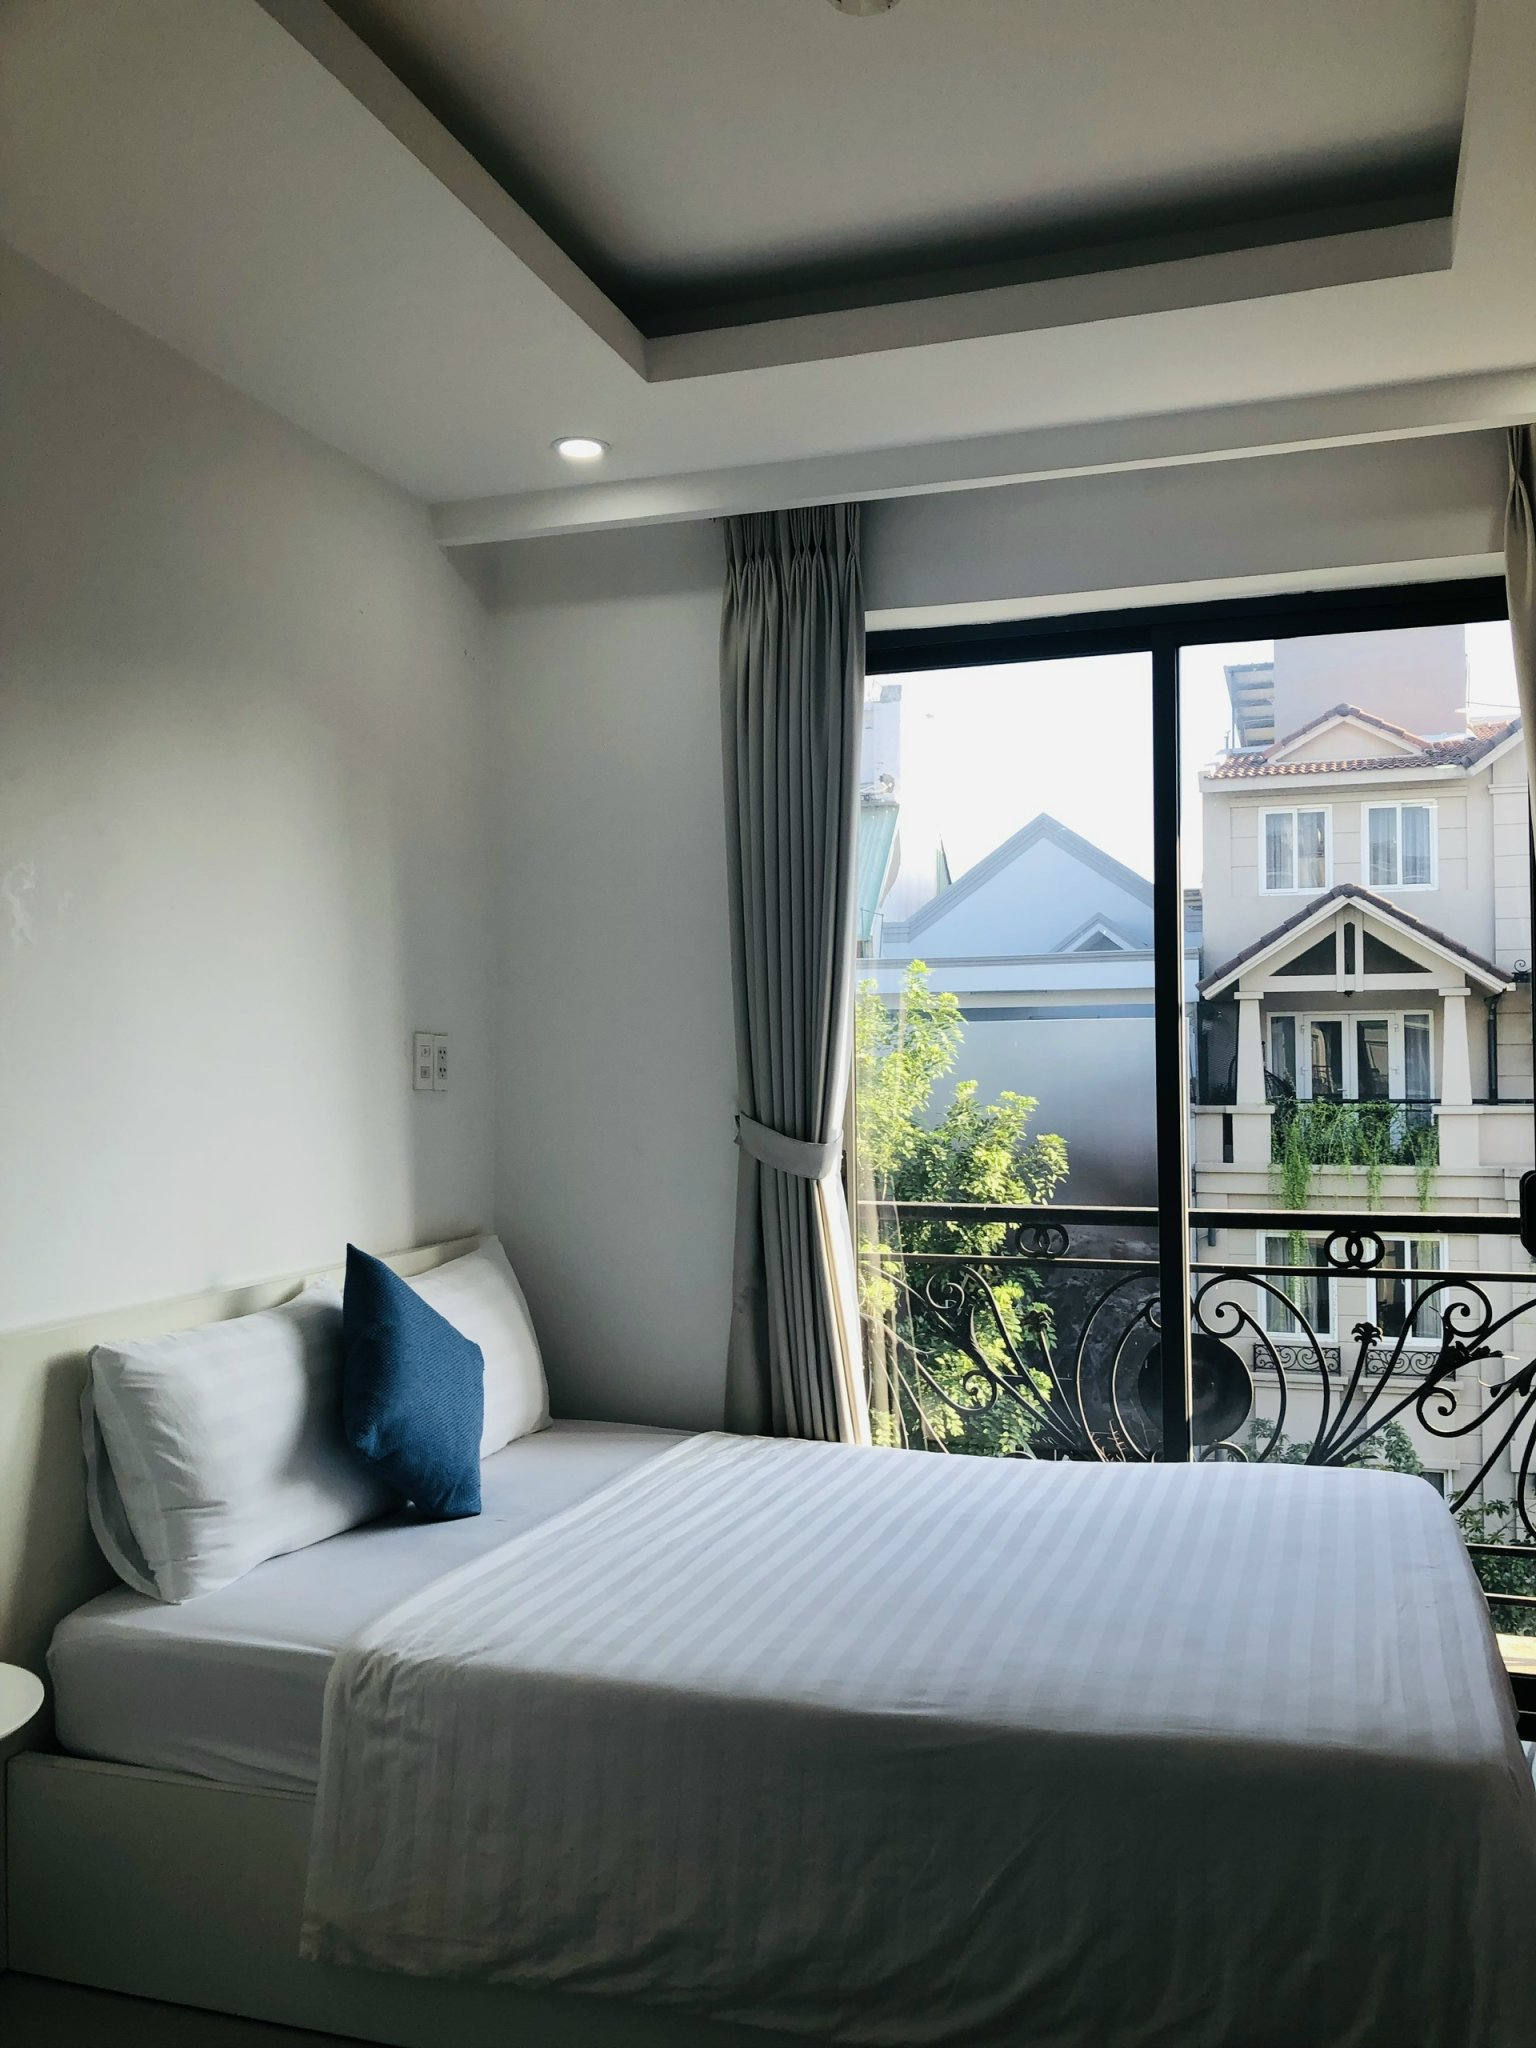 Cho thuê căn hộ 1 phòng ngủ tại khu Phú Mỹ Hưng, Quận 7, đầy đủ tiện nghi.